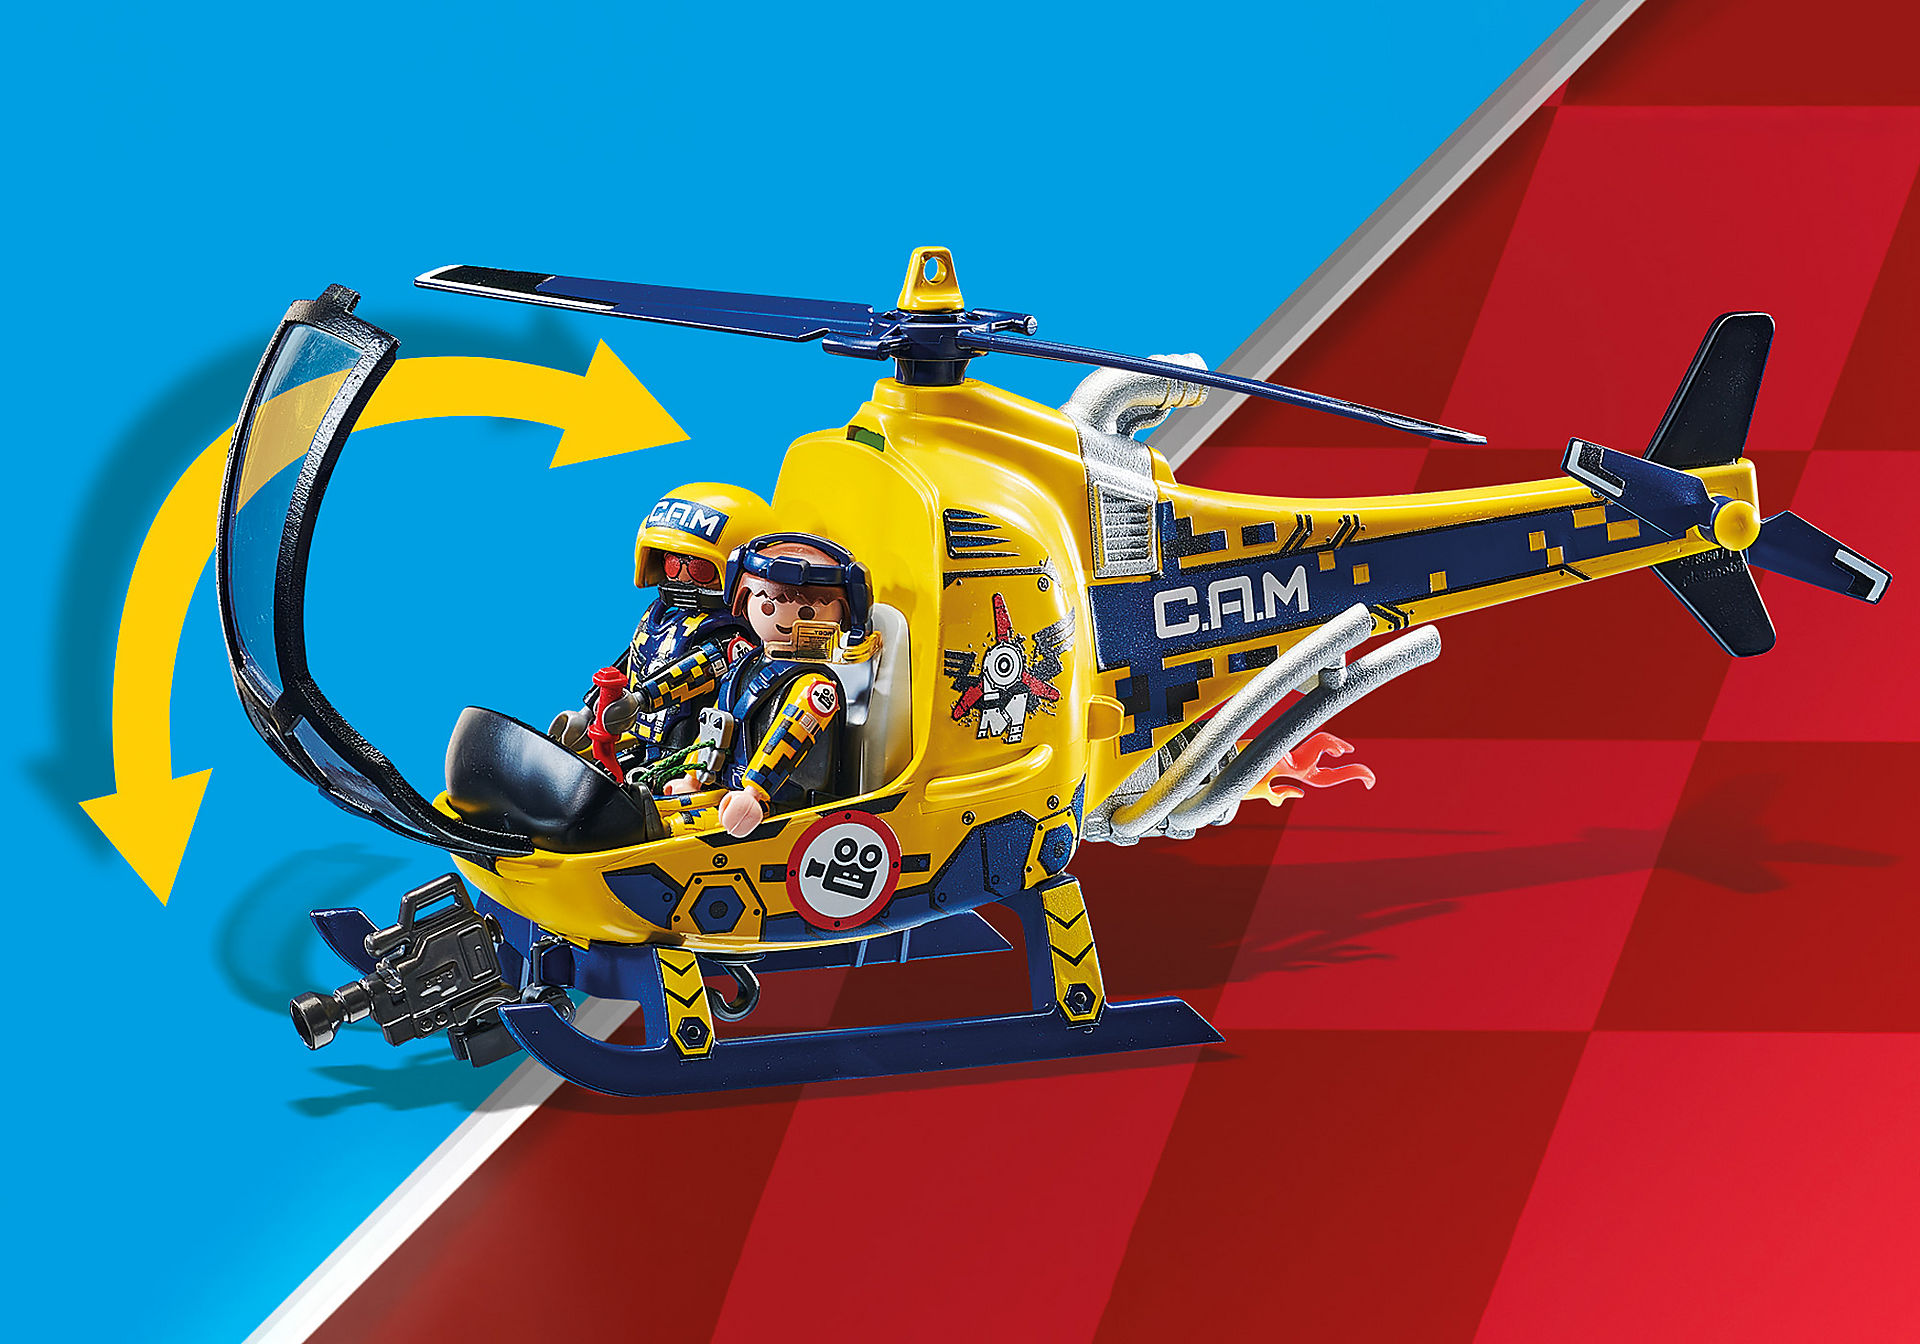 70833 Air Stunt Show Elicottero con troupe per le riprese zoom image4